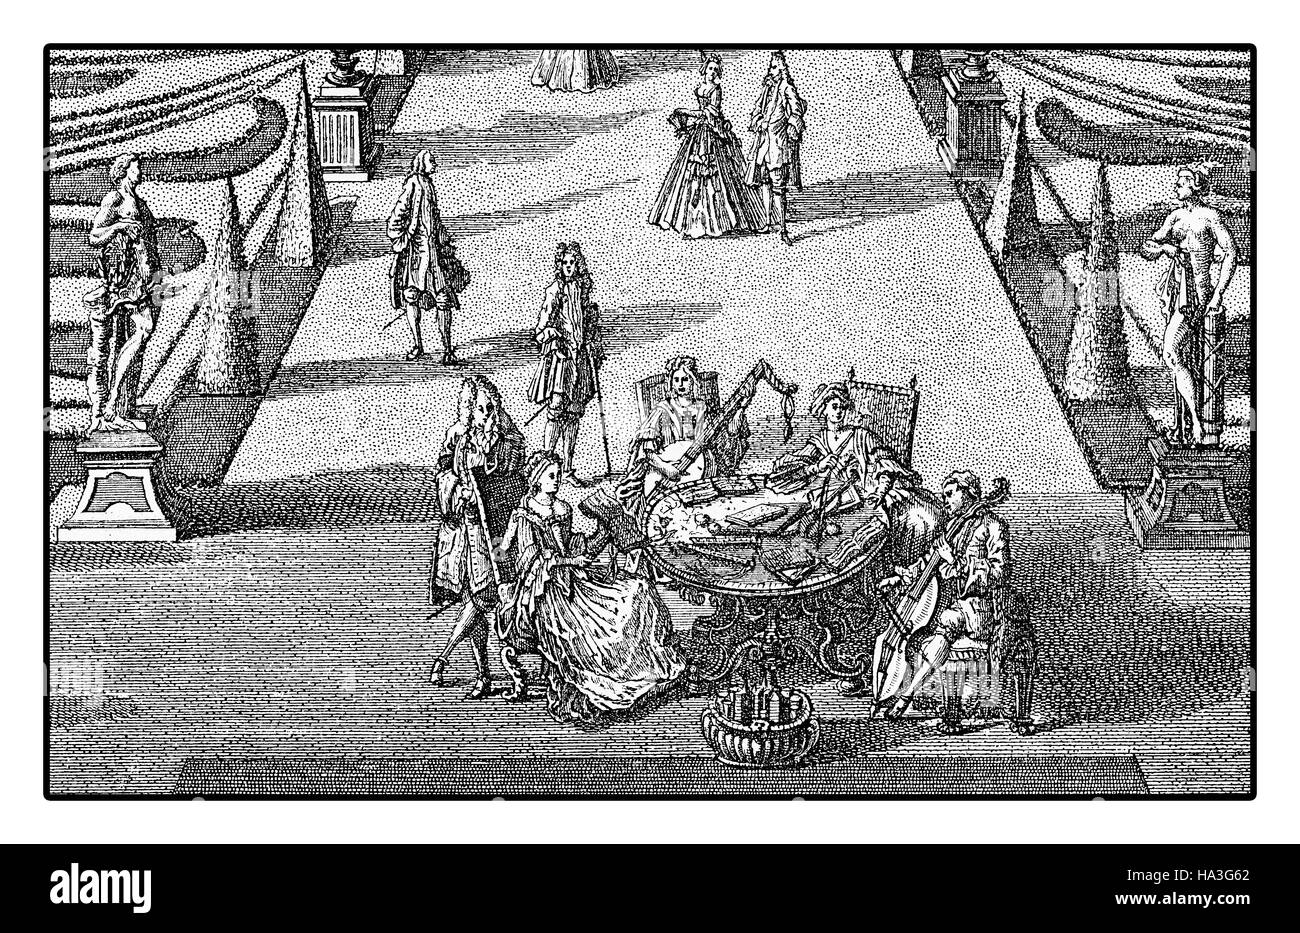 Fête de mariage et célébration de loisirs avec music in garden, gravure 18e siècle Banque D'Images